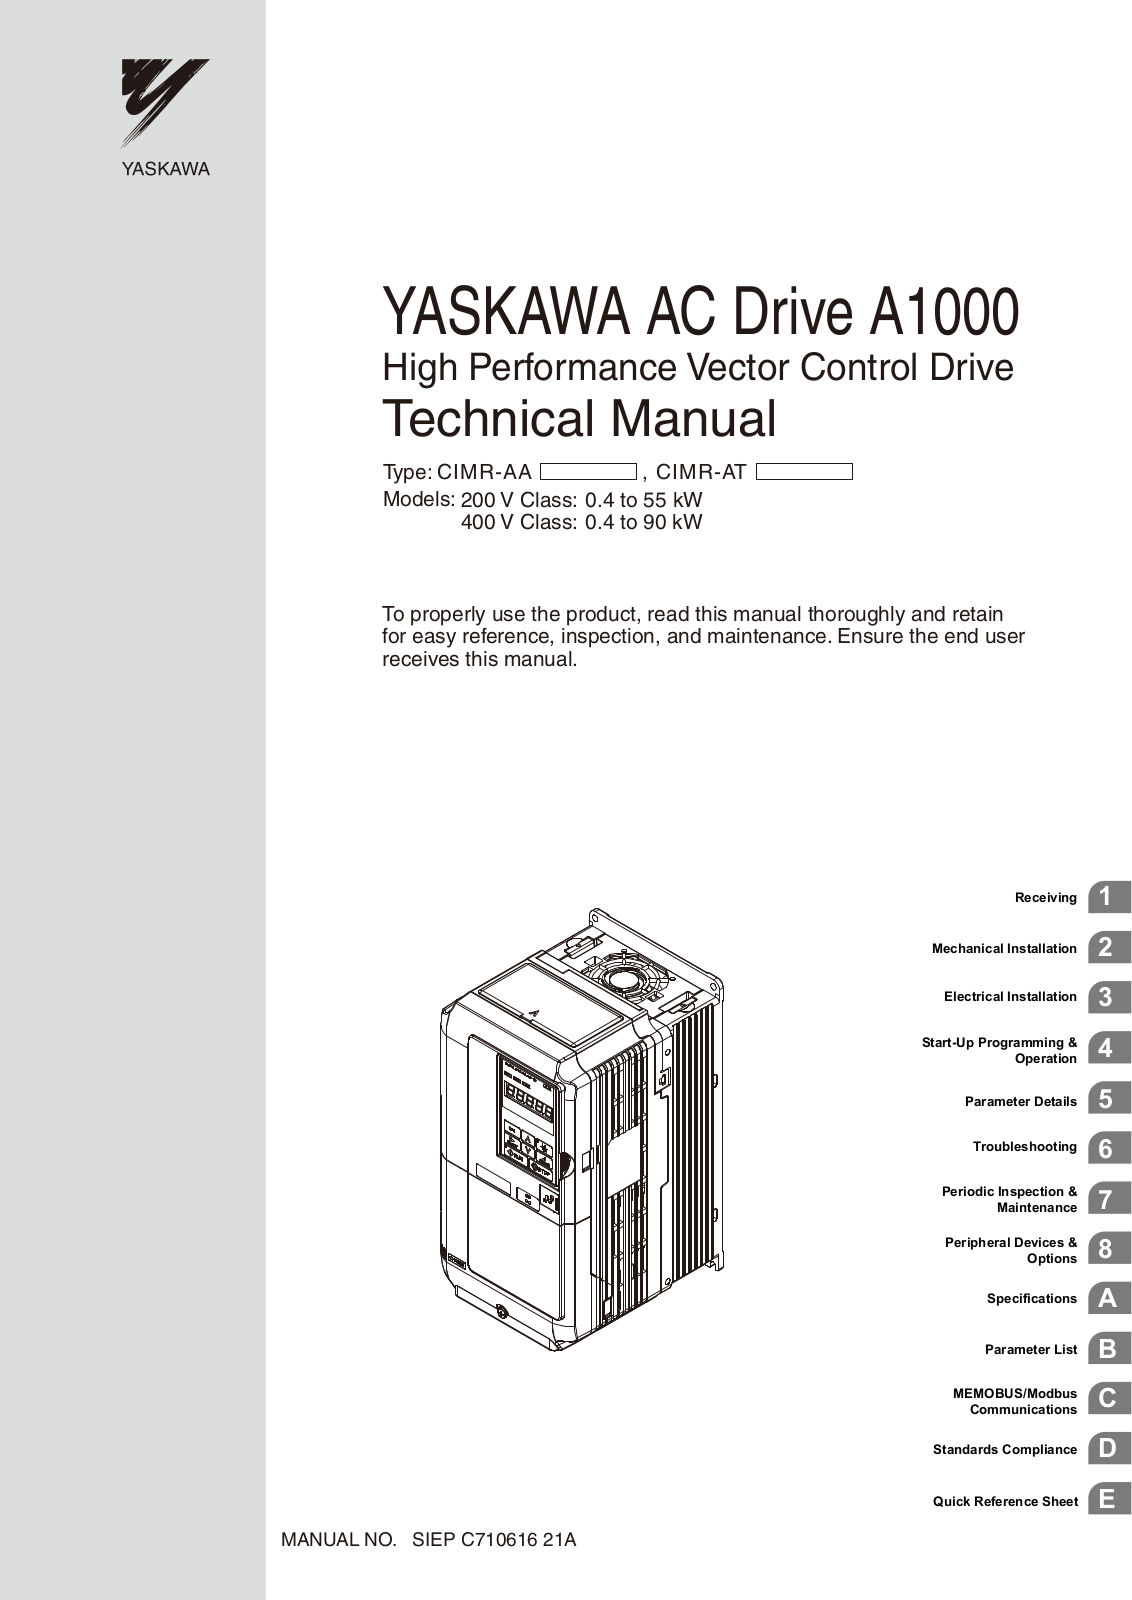 Yaskawa A1000 Technical Manual